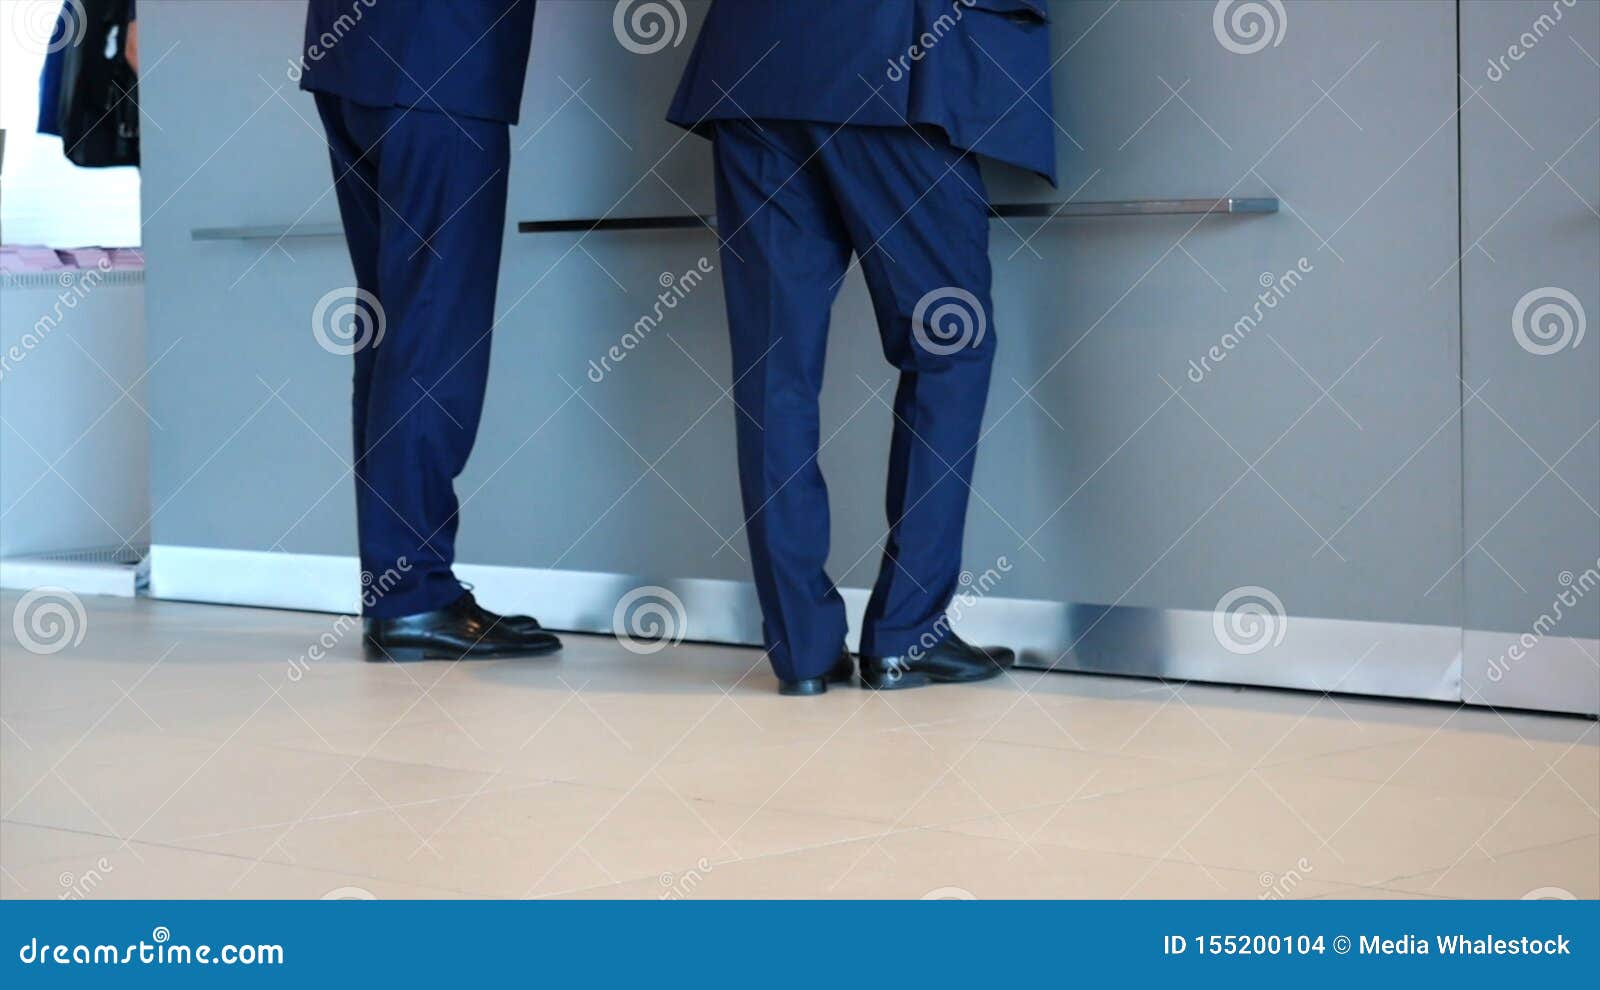 blue trousers black shoes